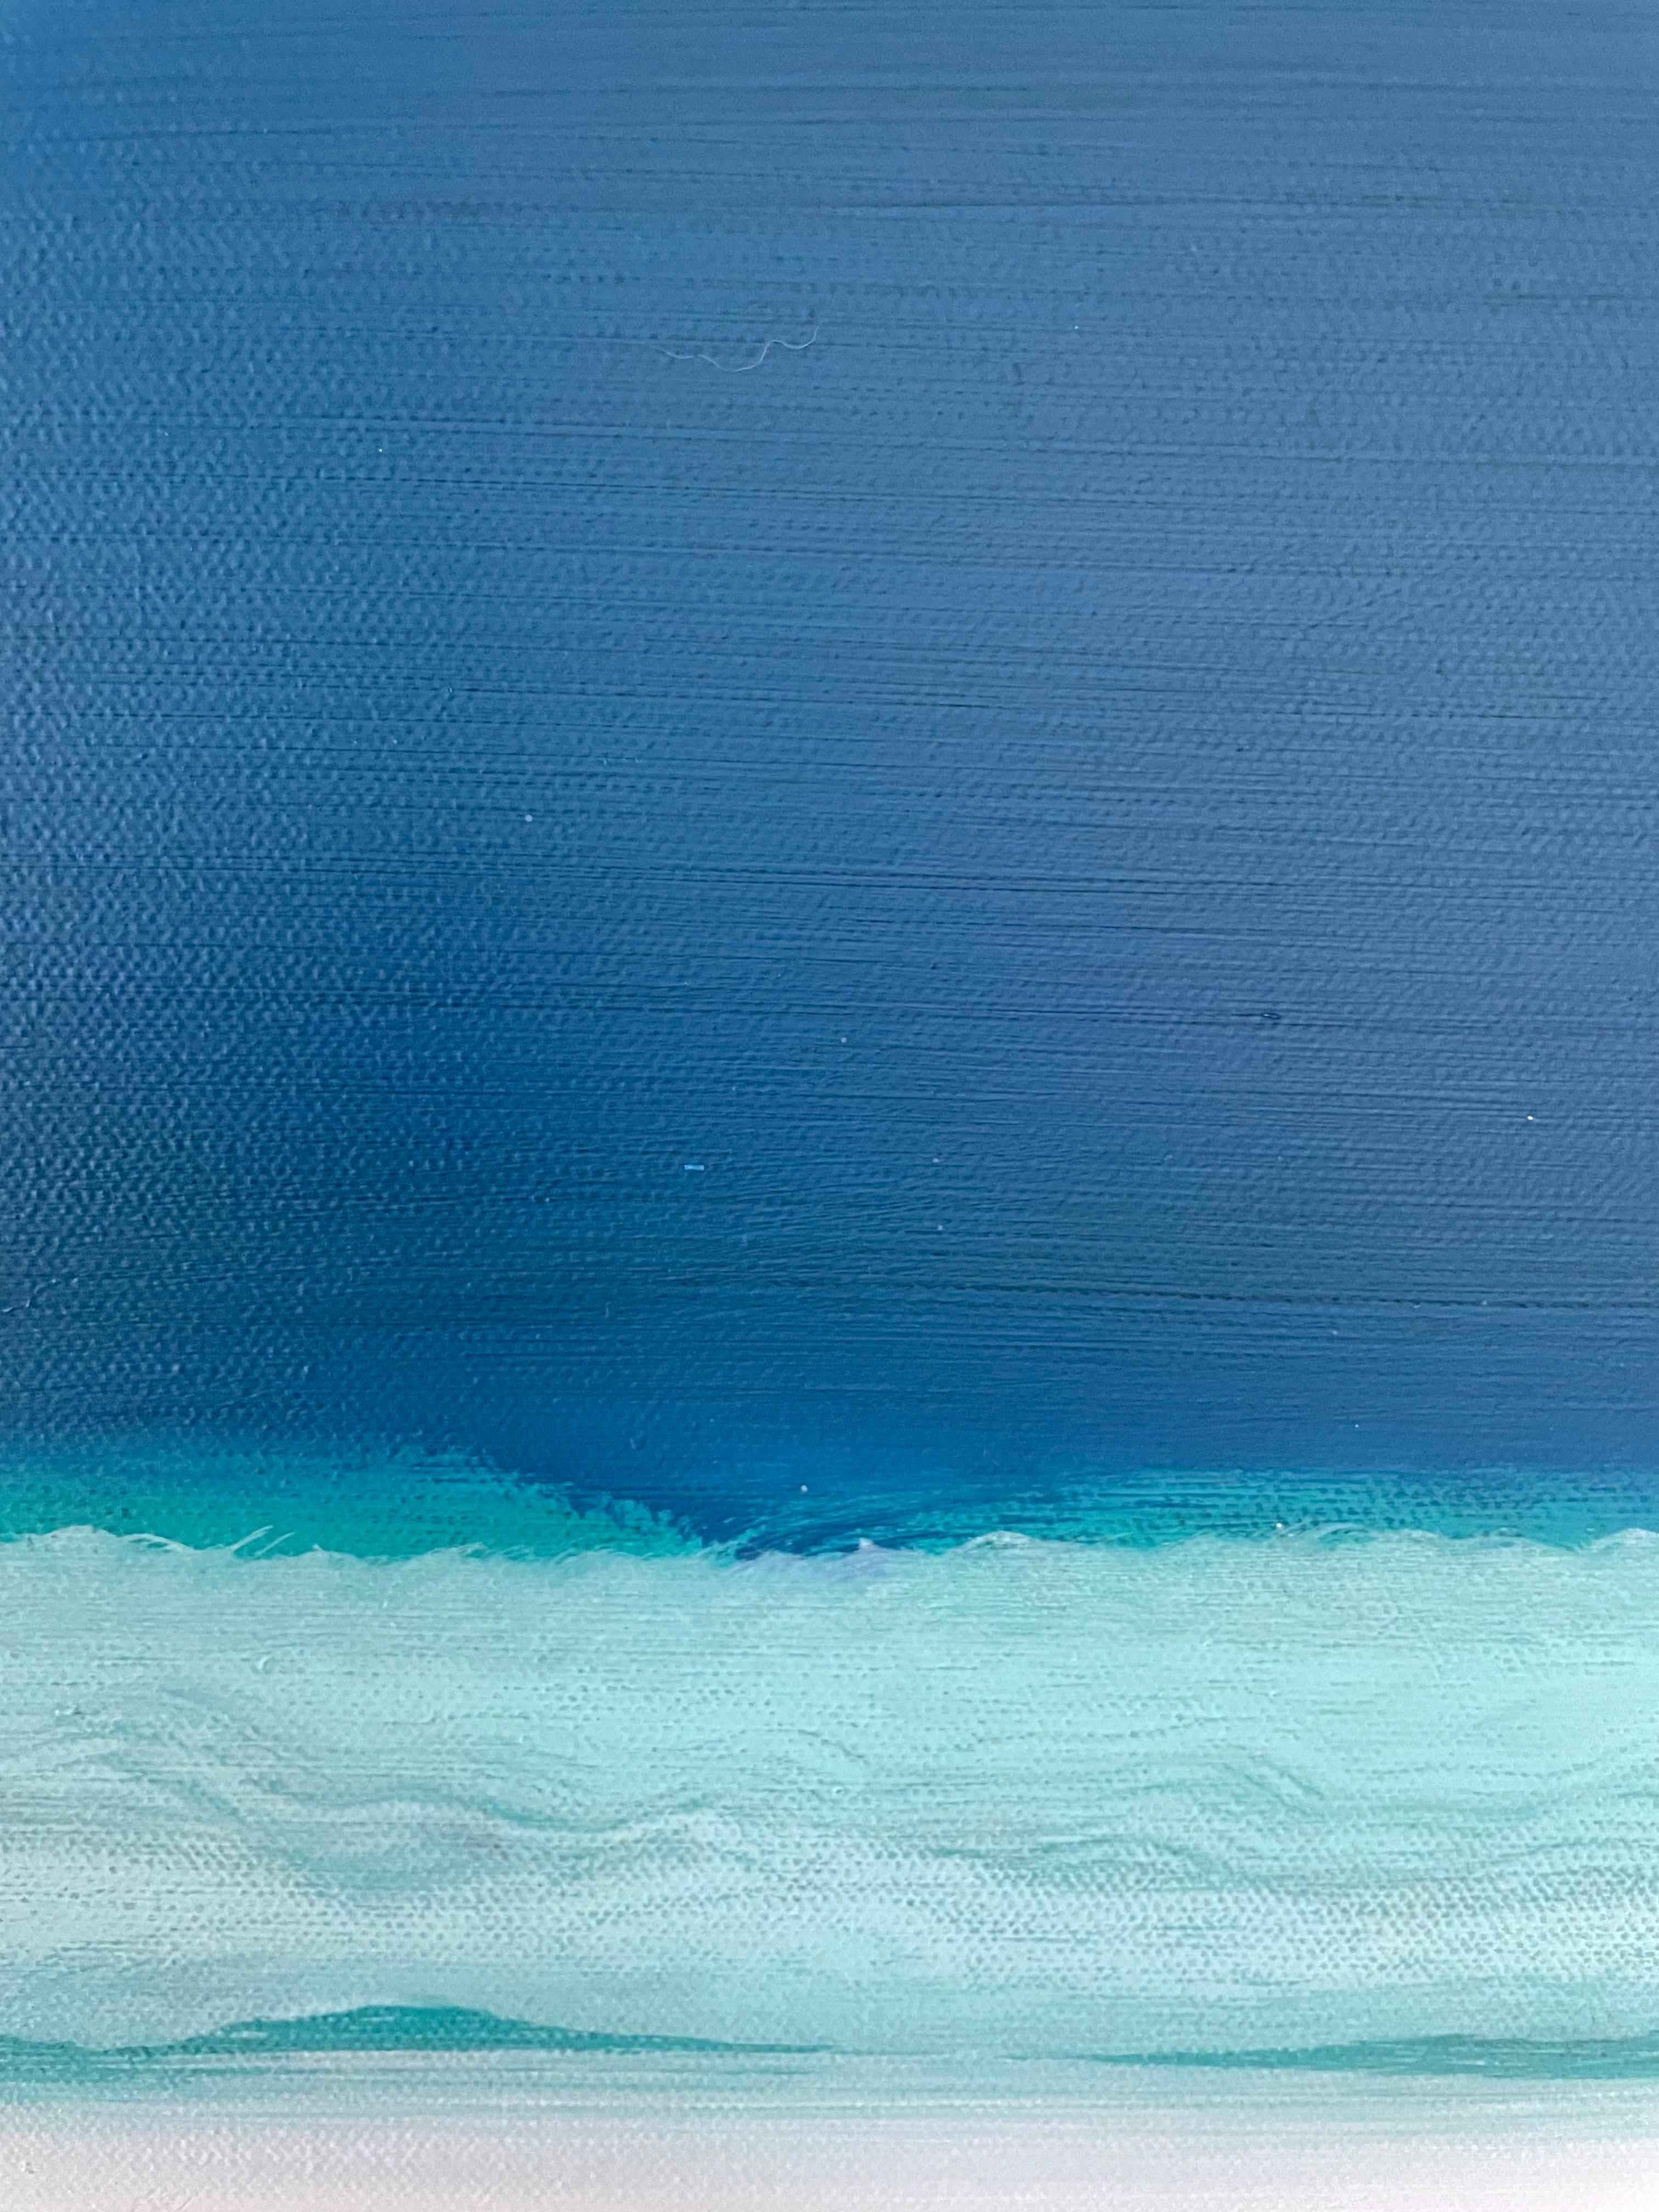 Il s'agit d'un paysage abstrait géométrique contemporain peint à l'huile sur toile avec de l'eau verte et un ciel bleu. Elle rappelle la tradition moderniste des champs de couleurs de Mark Rothko. Il est signé au dos. Tout le matériel d'accrochage